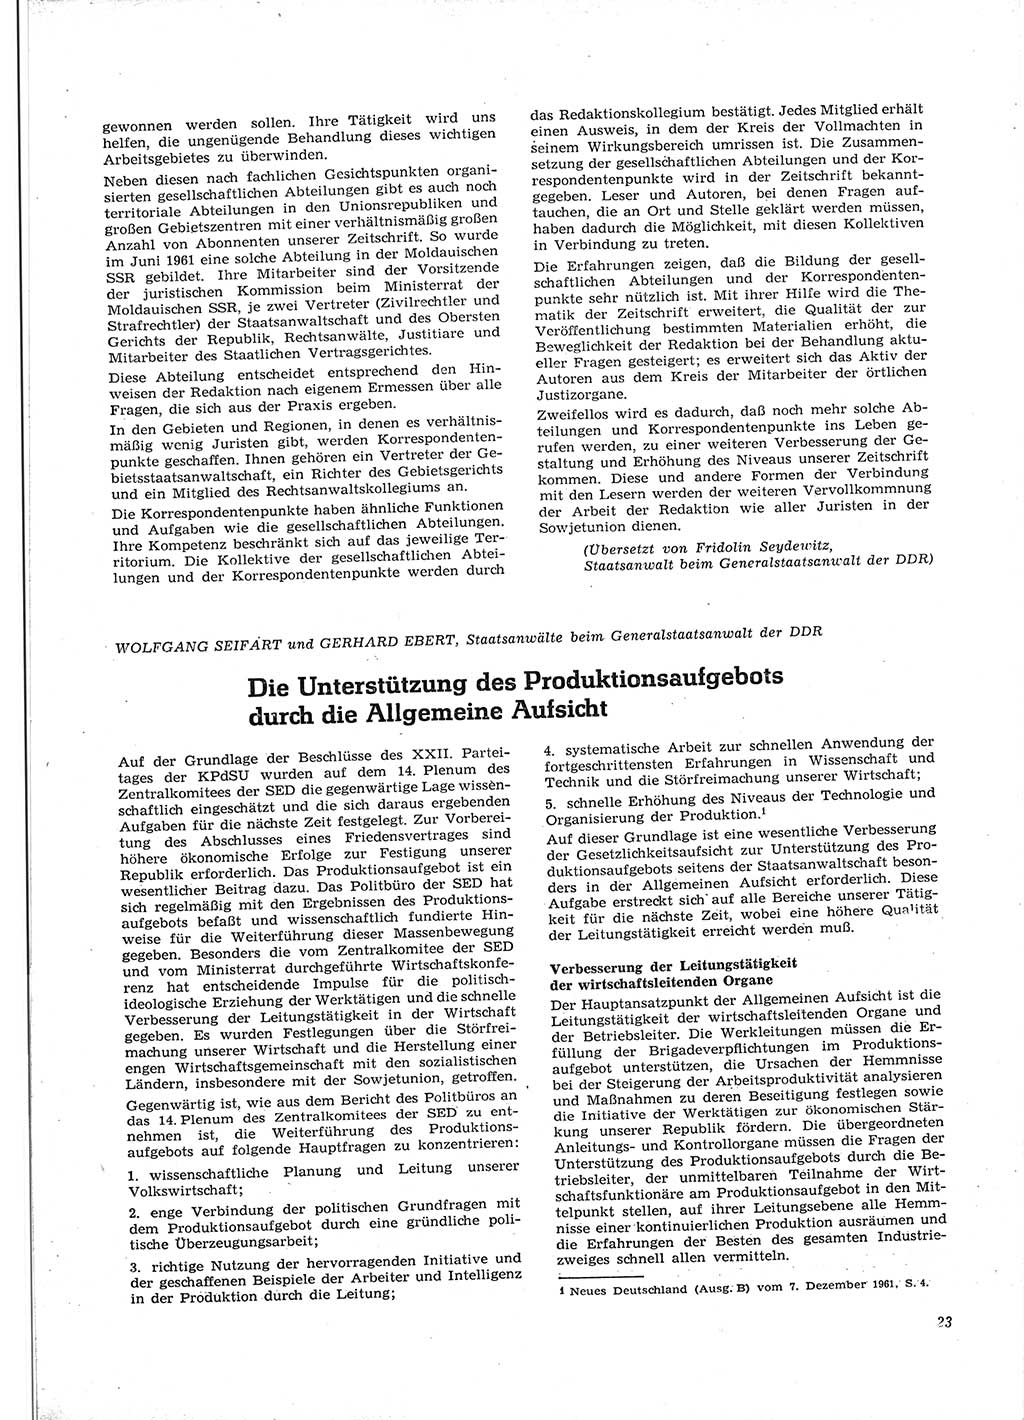 Neue Justiz (NJ), Zeitschrift für Recht und Rechtswissenschaft [Deutsche Demokratische Republik (DDR)], 16. Jahrgang 1962, Seite 23 (NJ DDR 1962, S. 23)